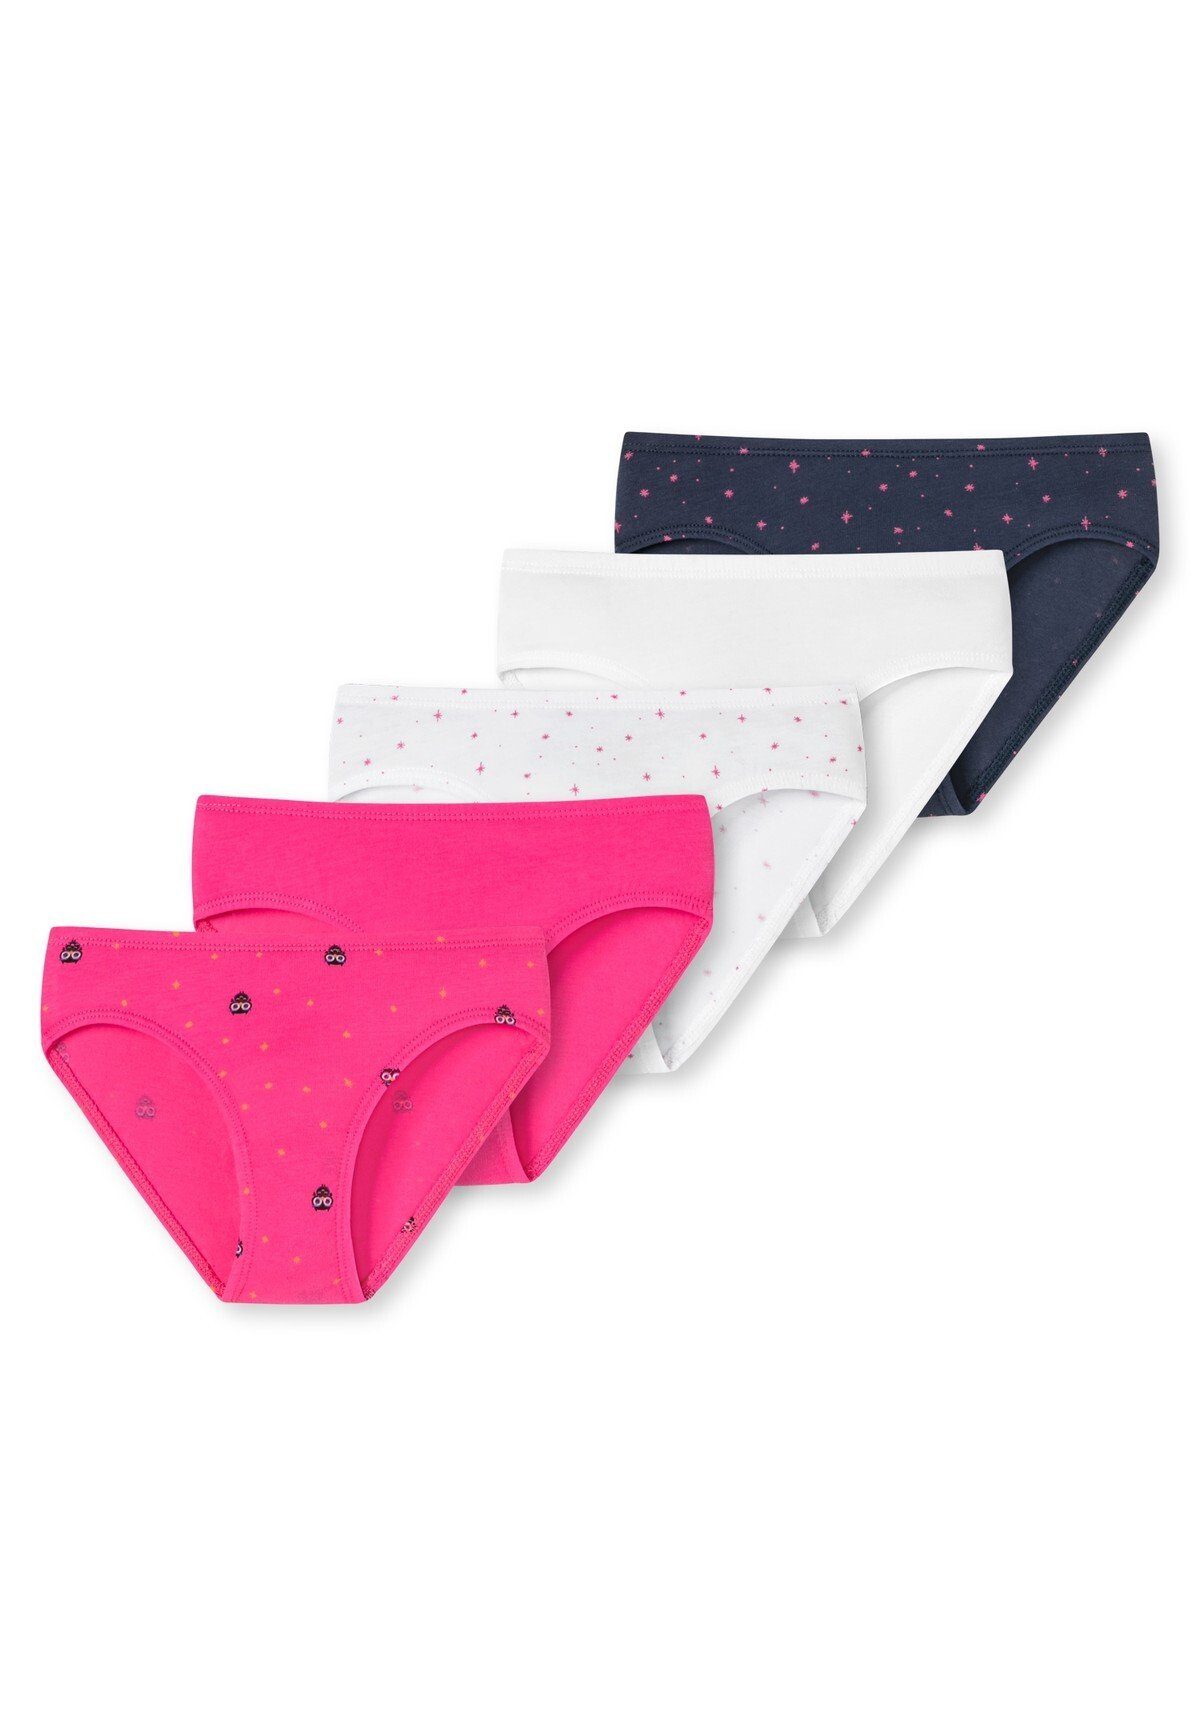 Schiesser Slip Mädchen Slips 5er Pack - Unterhose, Pants, Shorts Pink/Weiß/Dunkelblau